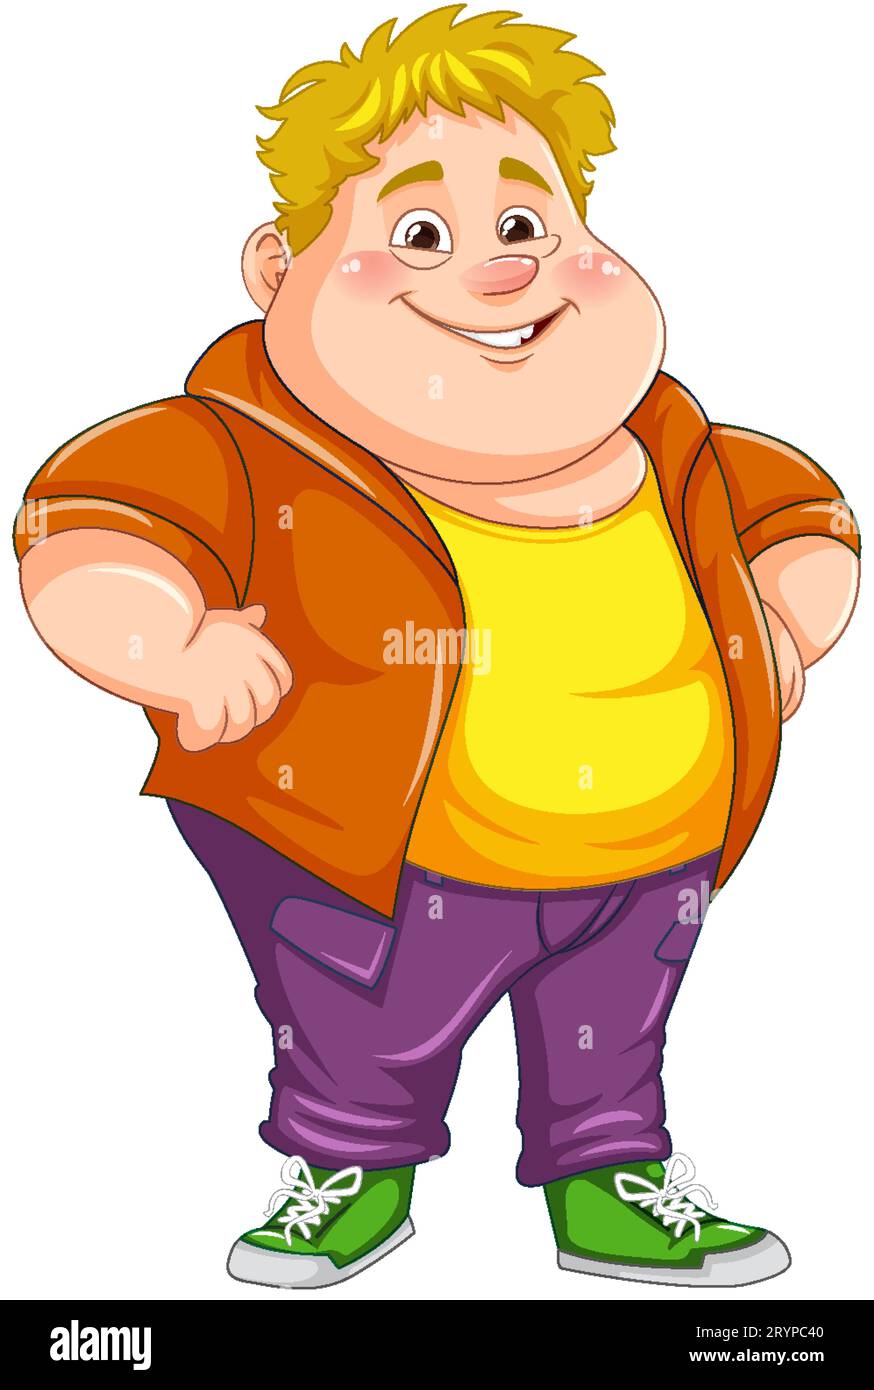 chubby man cartoon clip art